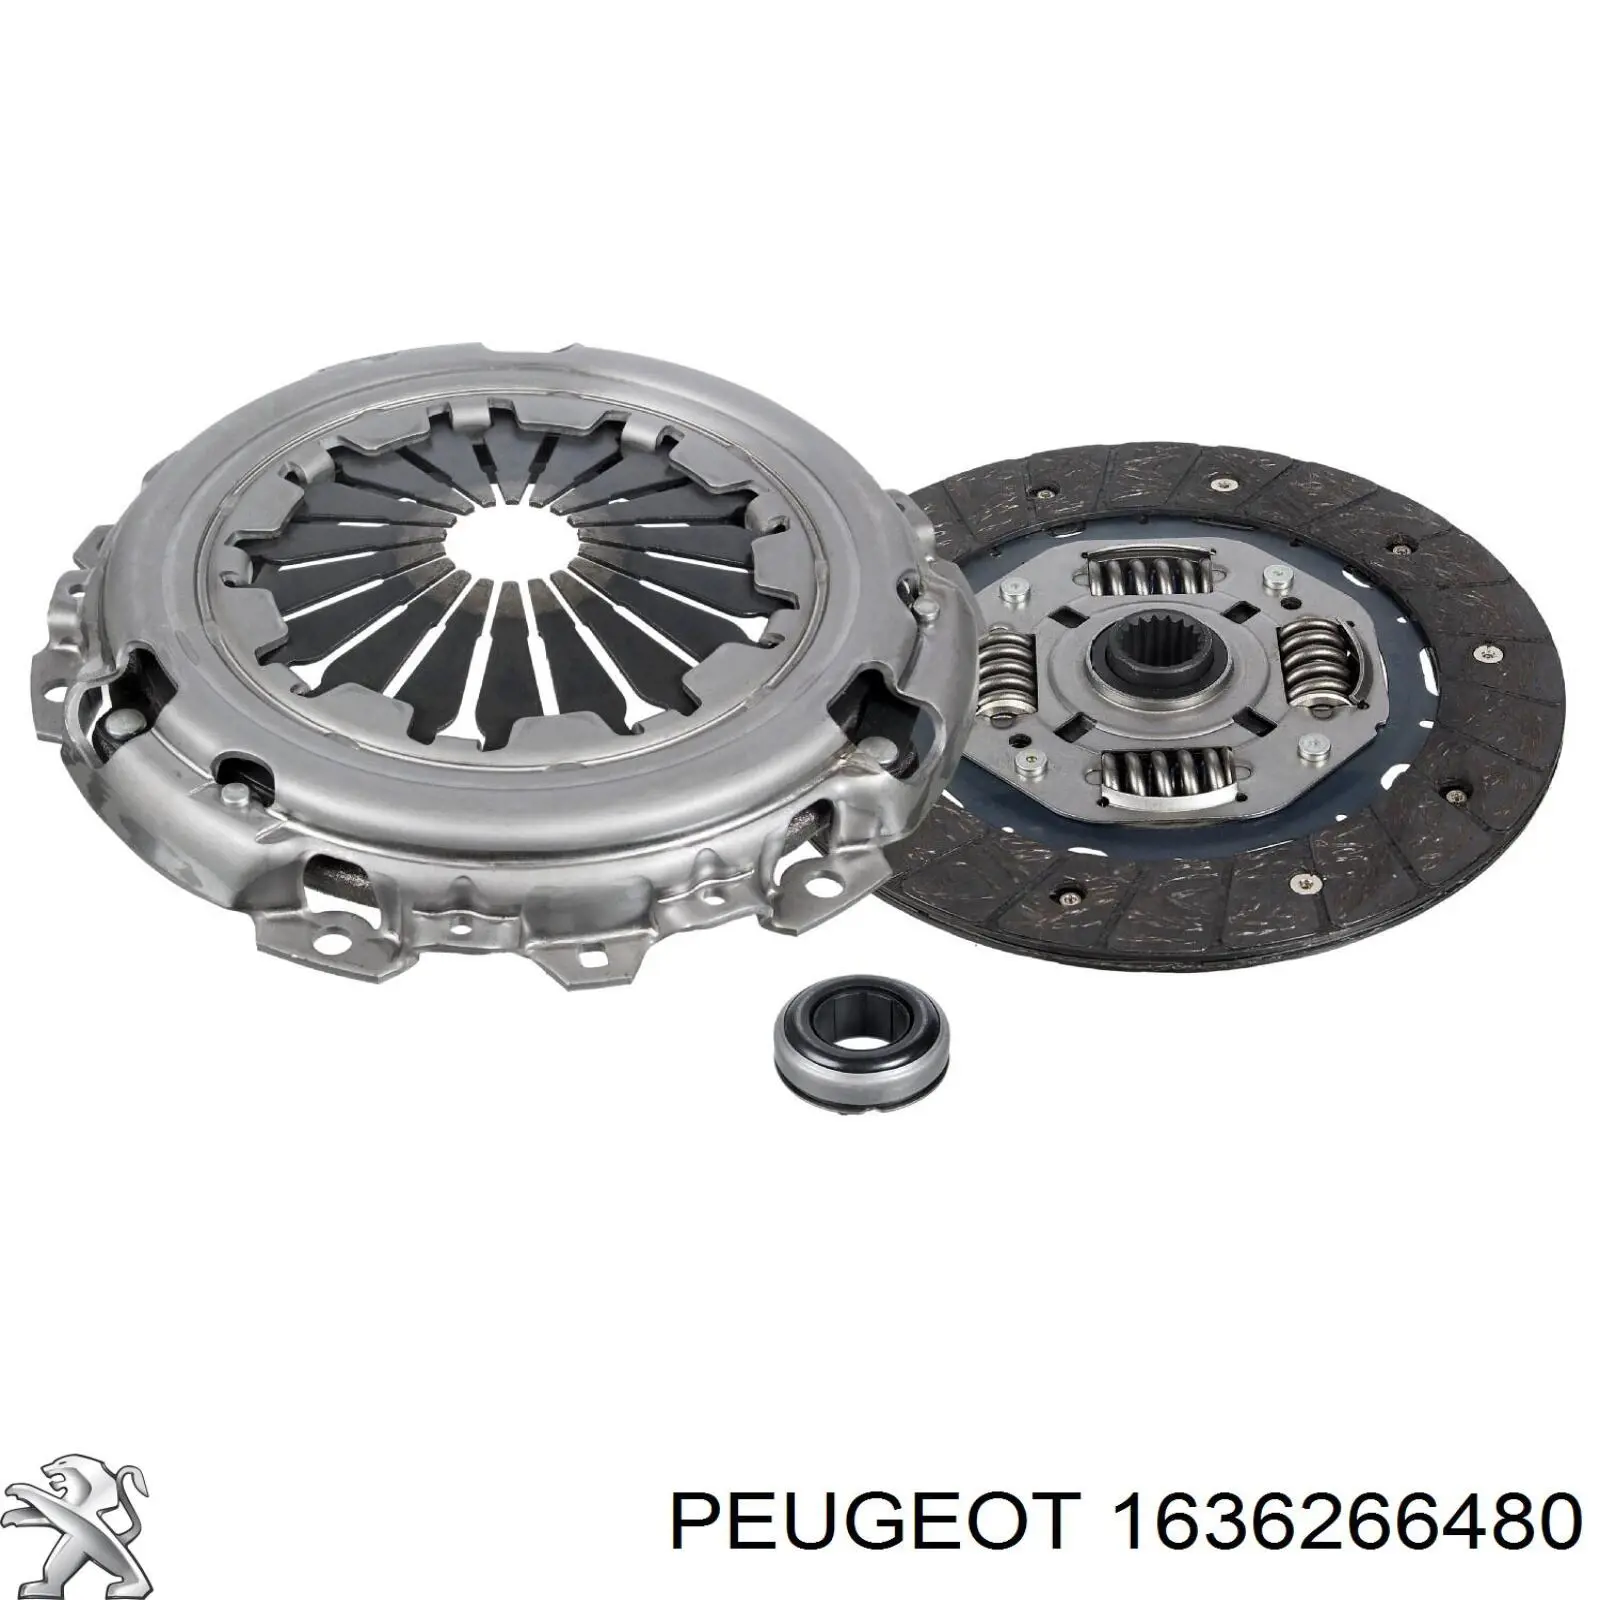 Kit de embrague (3 partes) 1636266480 Peugeot/Citroen